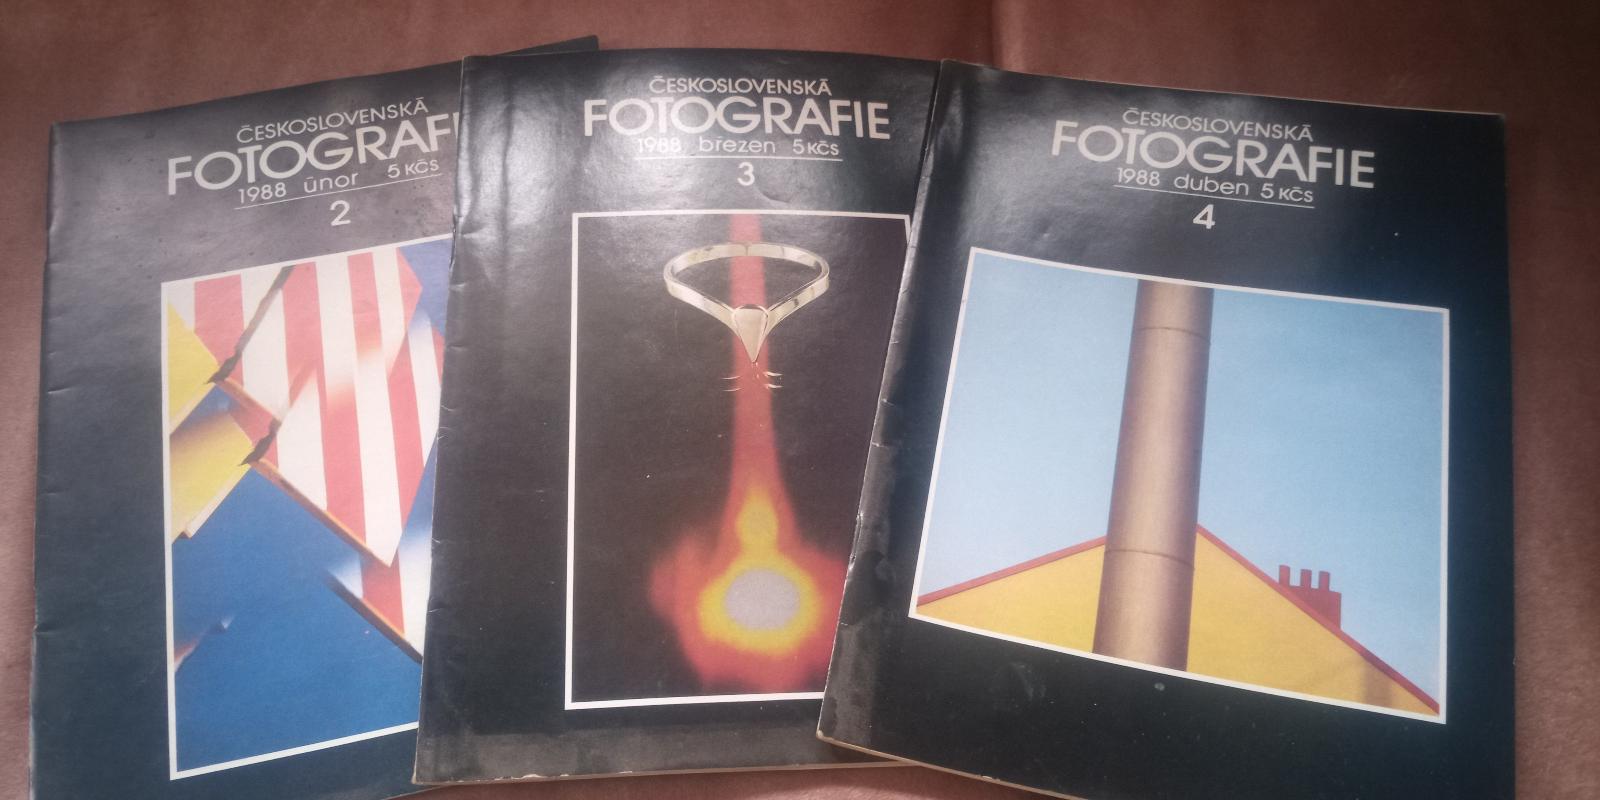 Časopis Fotografie rok 1988 - Knihy a časopisy